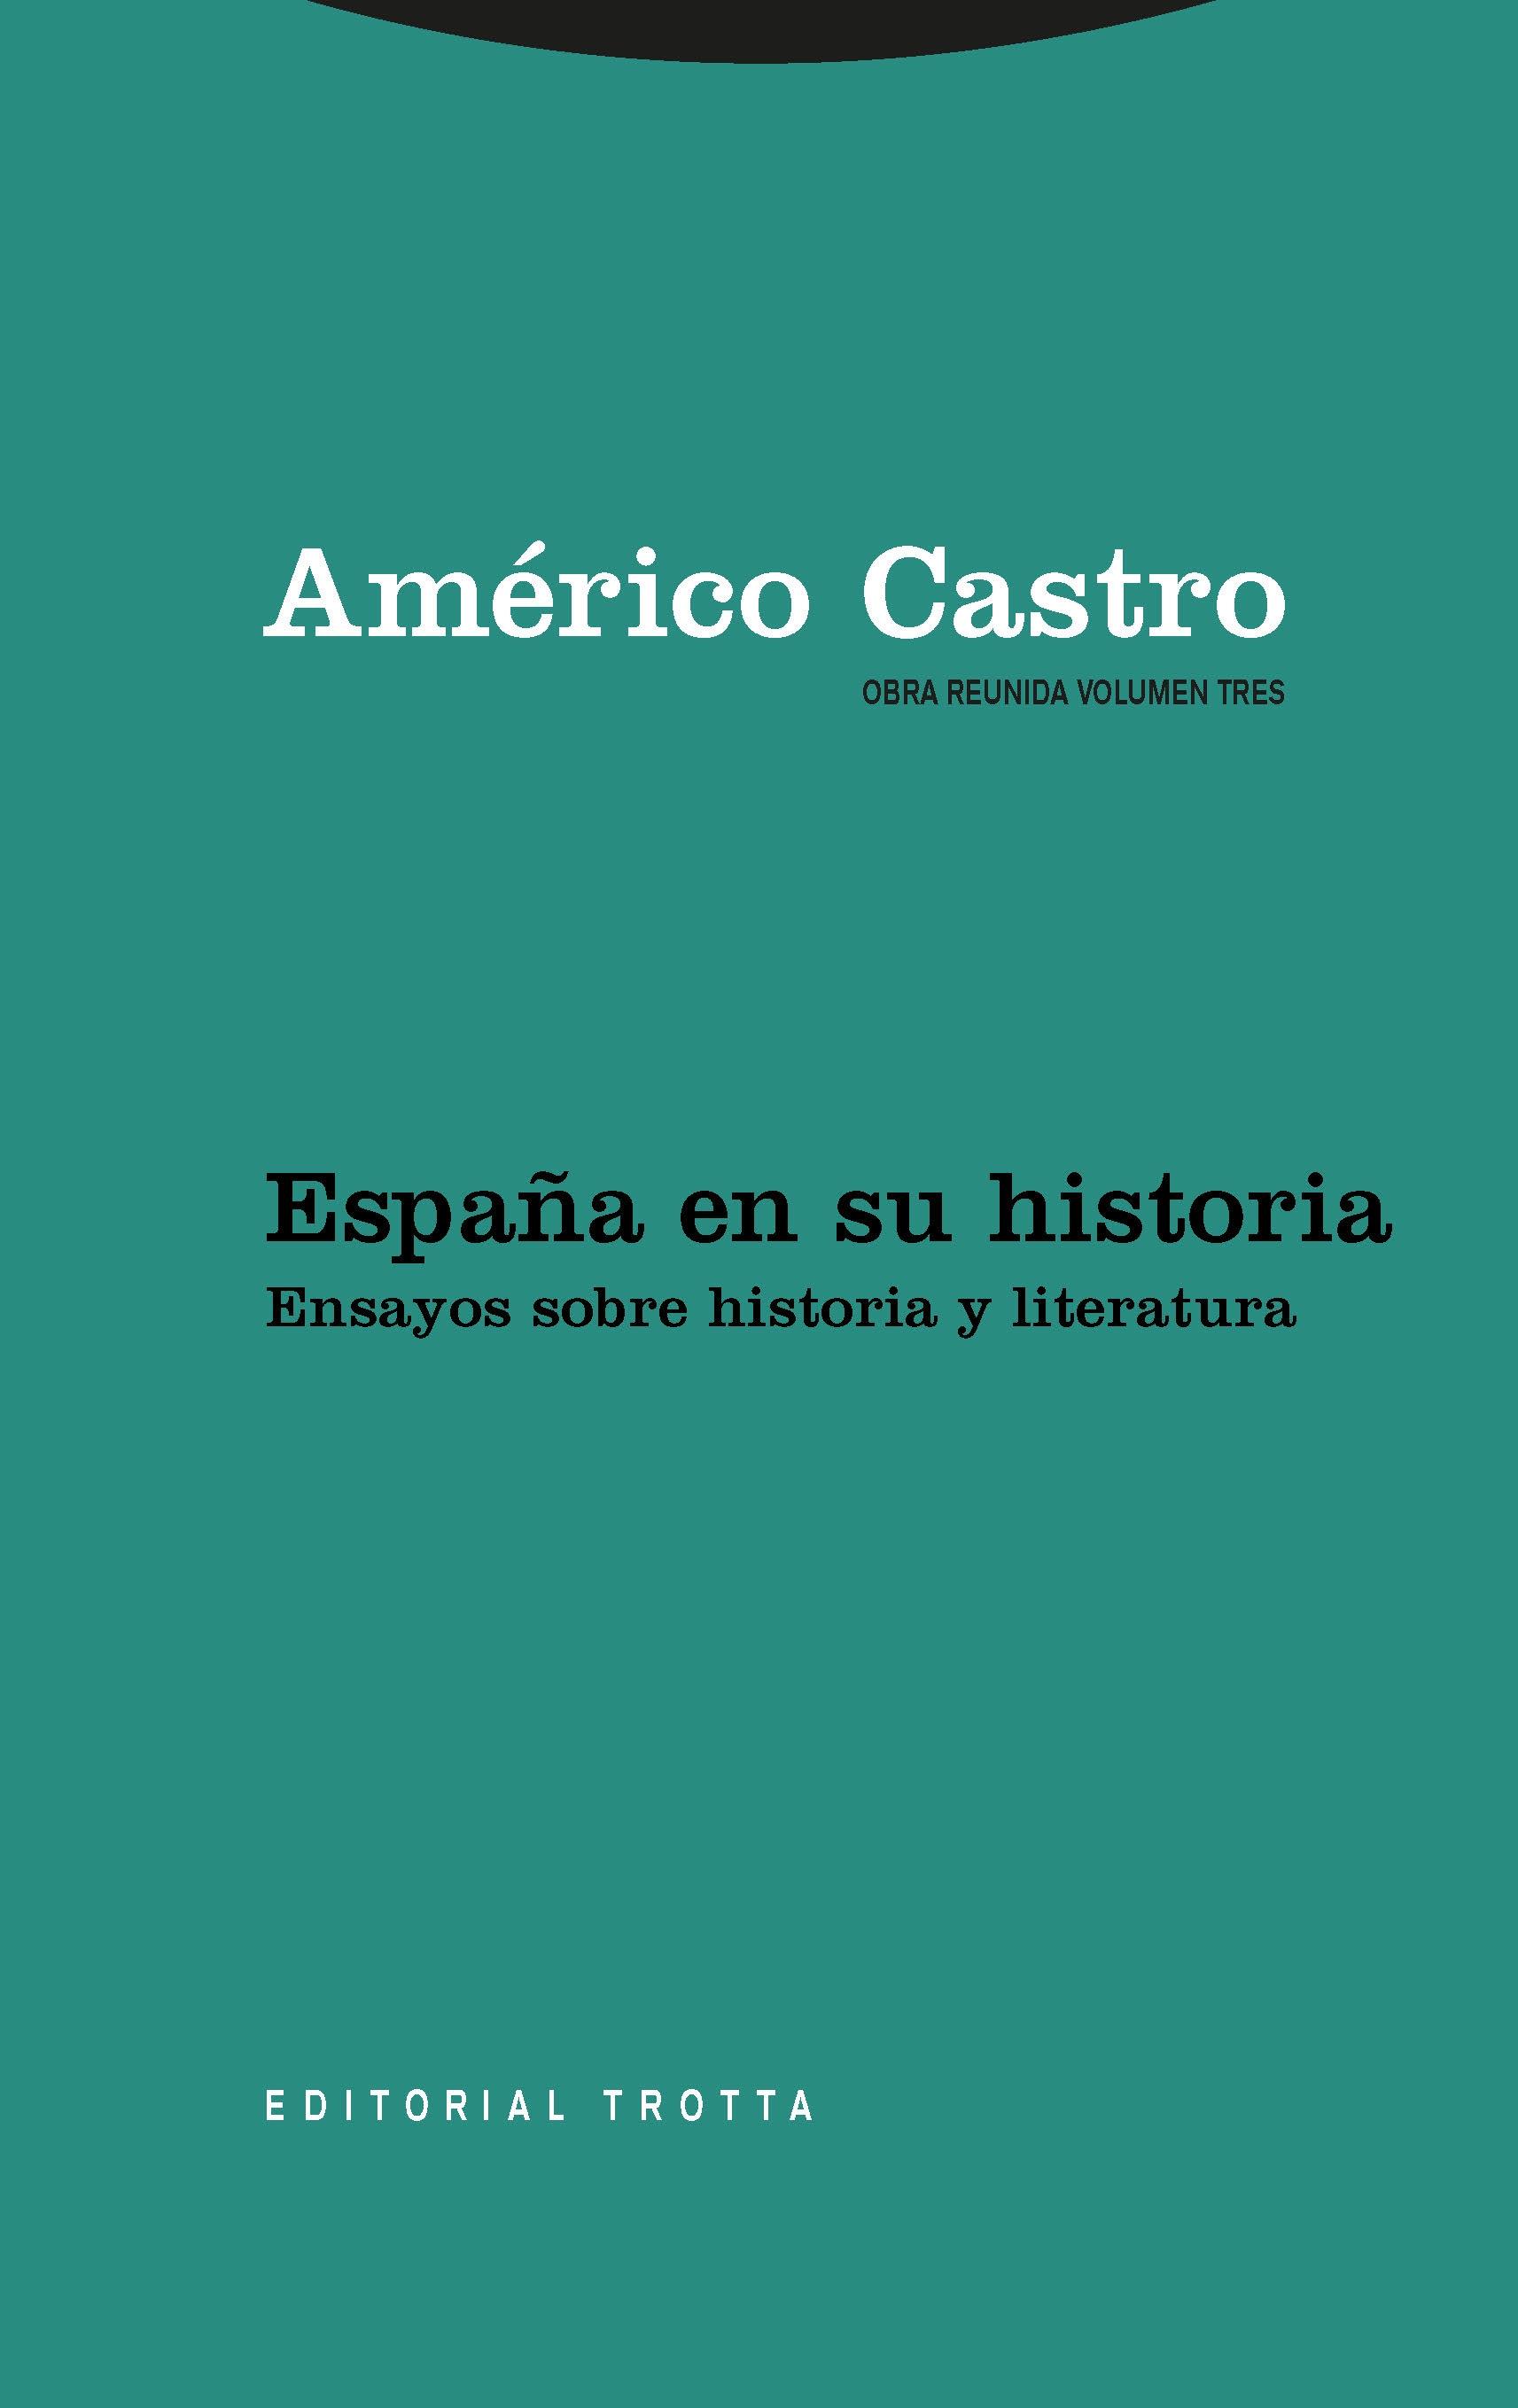 España en su historia. Ensayos sobre historia y literatura "(Obra reunida de Américo Castro - 3)"